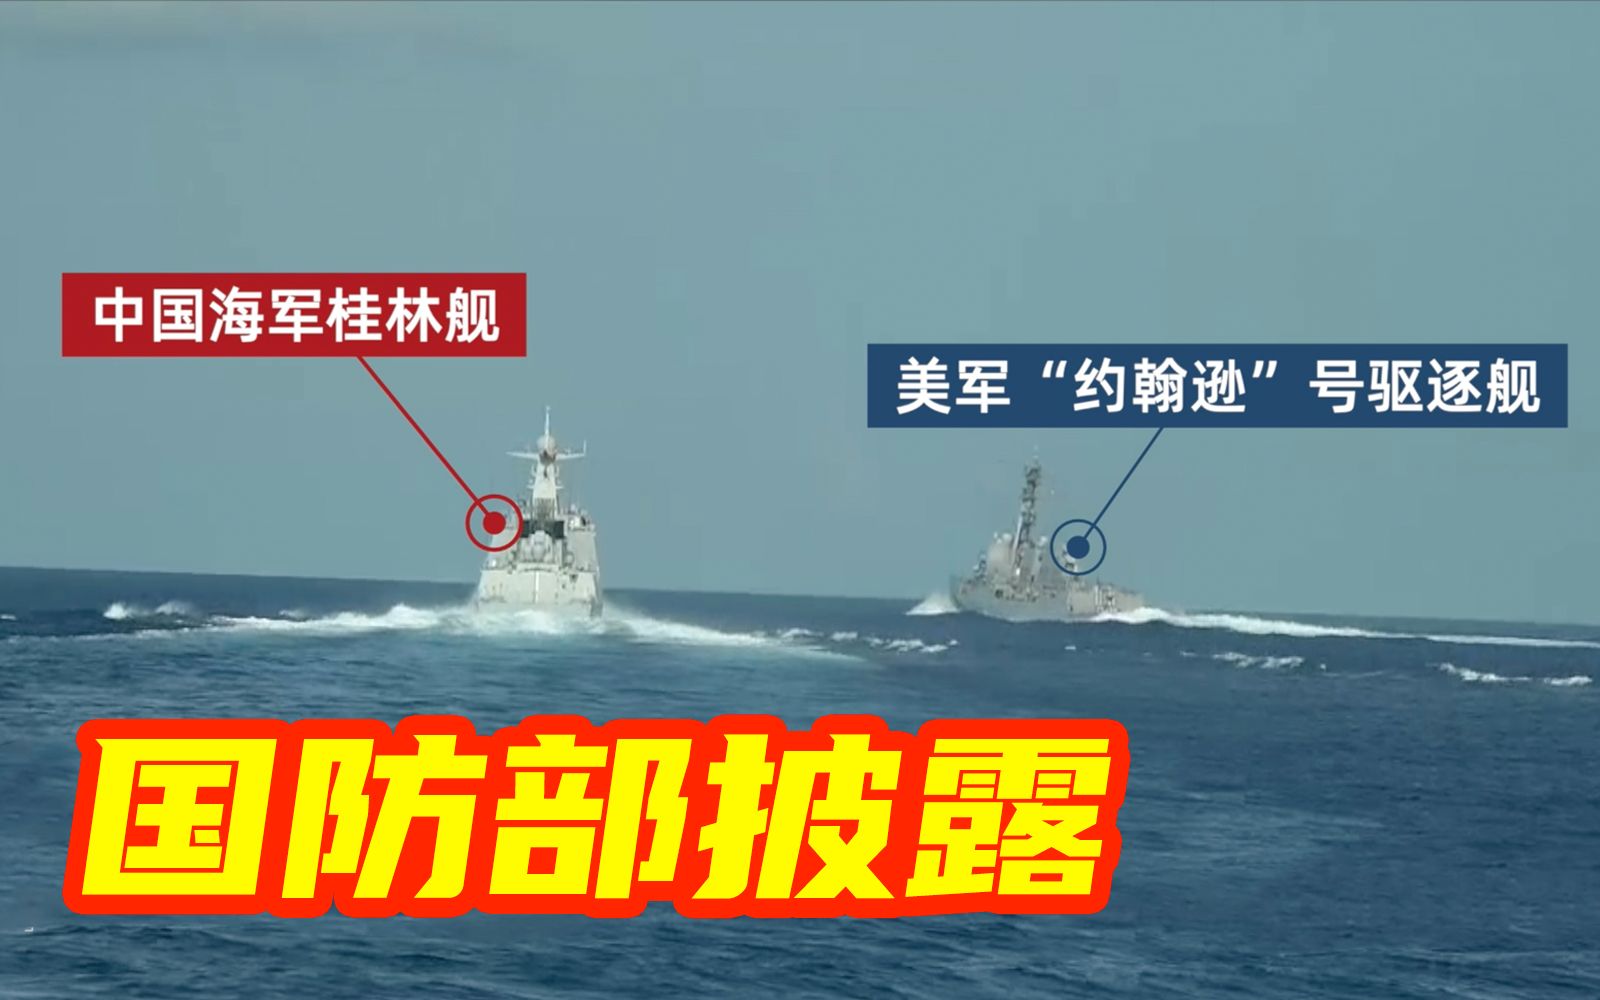 视频证据！美军舰侵权挑衅正常训练的中国海军